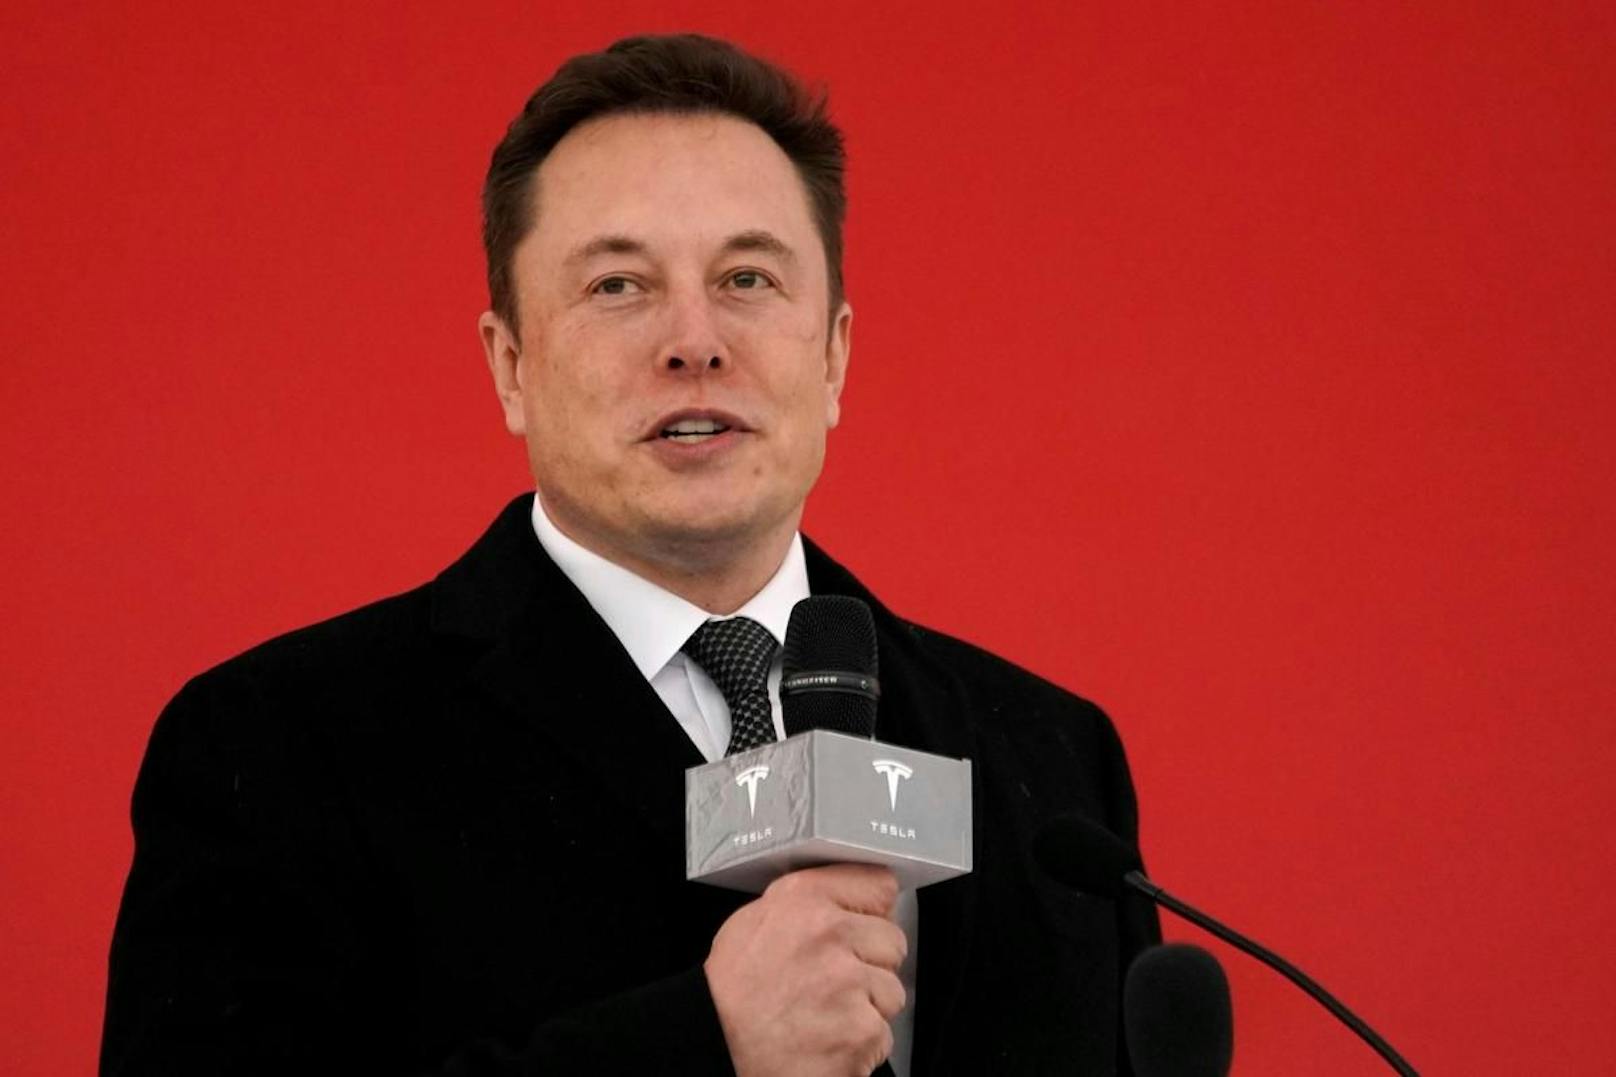 Damit liegt er noch immer hinter anderen Unternehmenschefs. Angeführt wird die Rangliste des Magazins "Forbes" derzeit von Tesla-Gründer Elon Musk mit geschätzt 271,5 Milliarden Dollar.